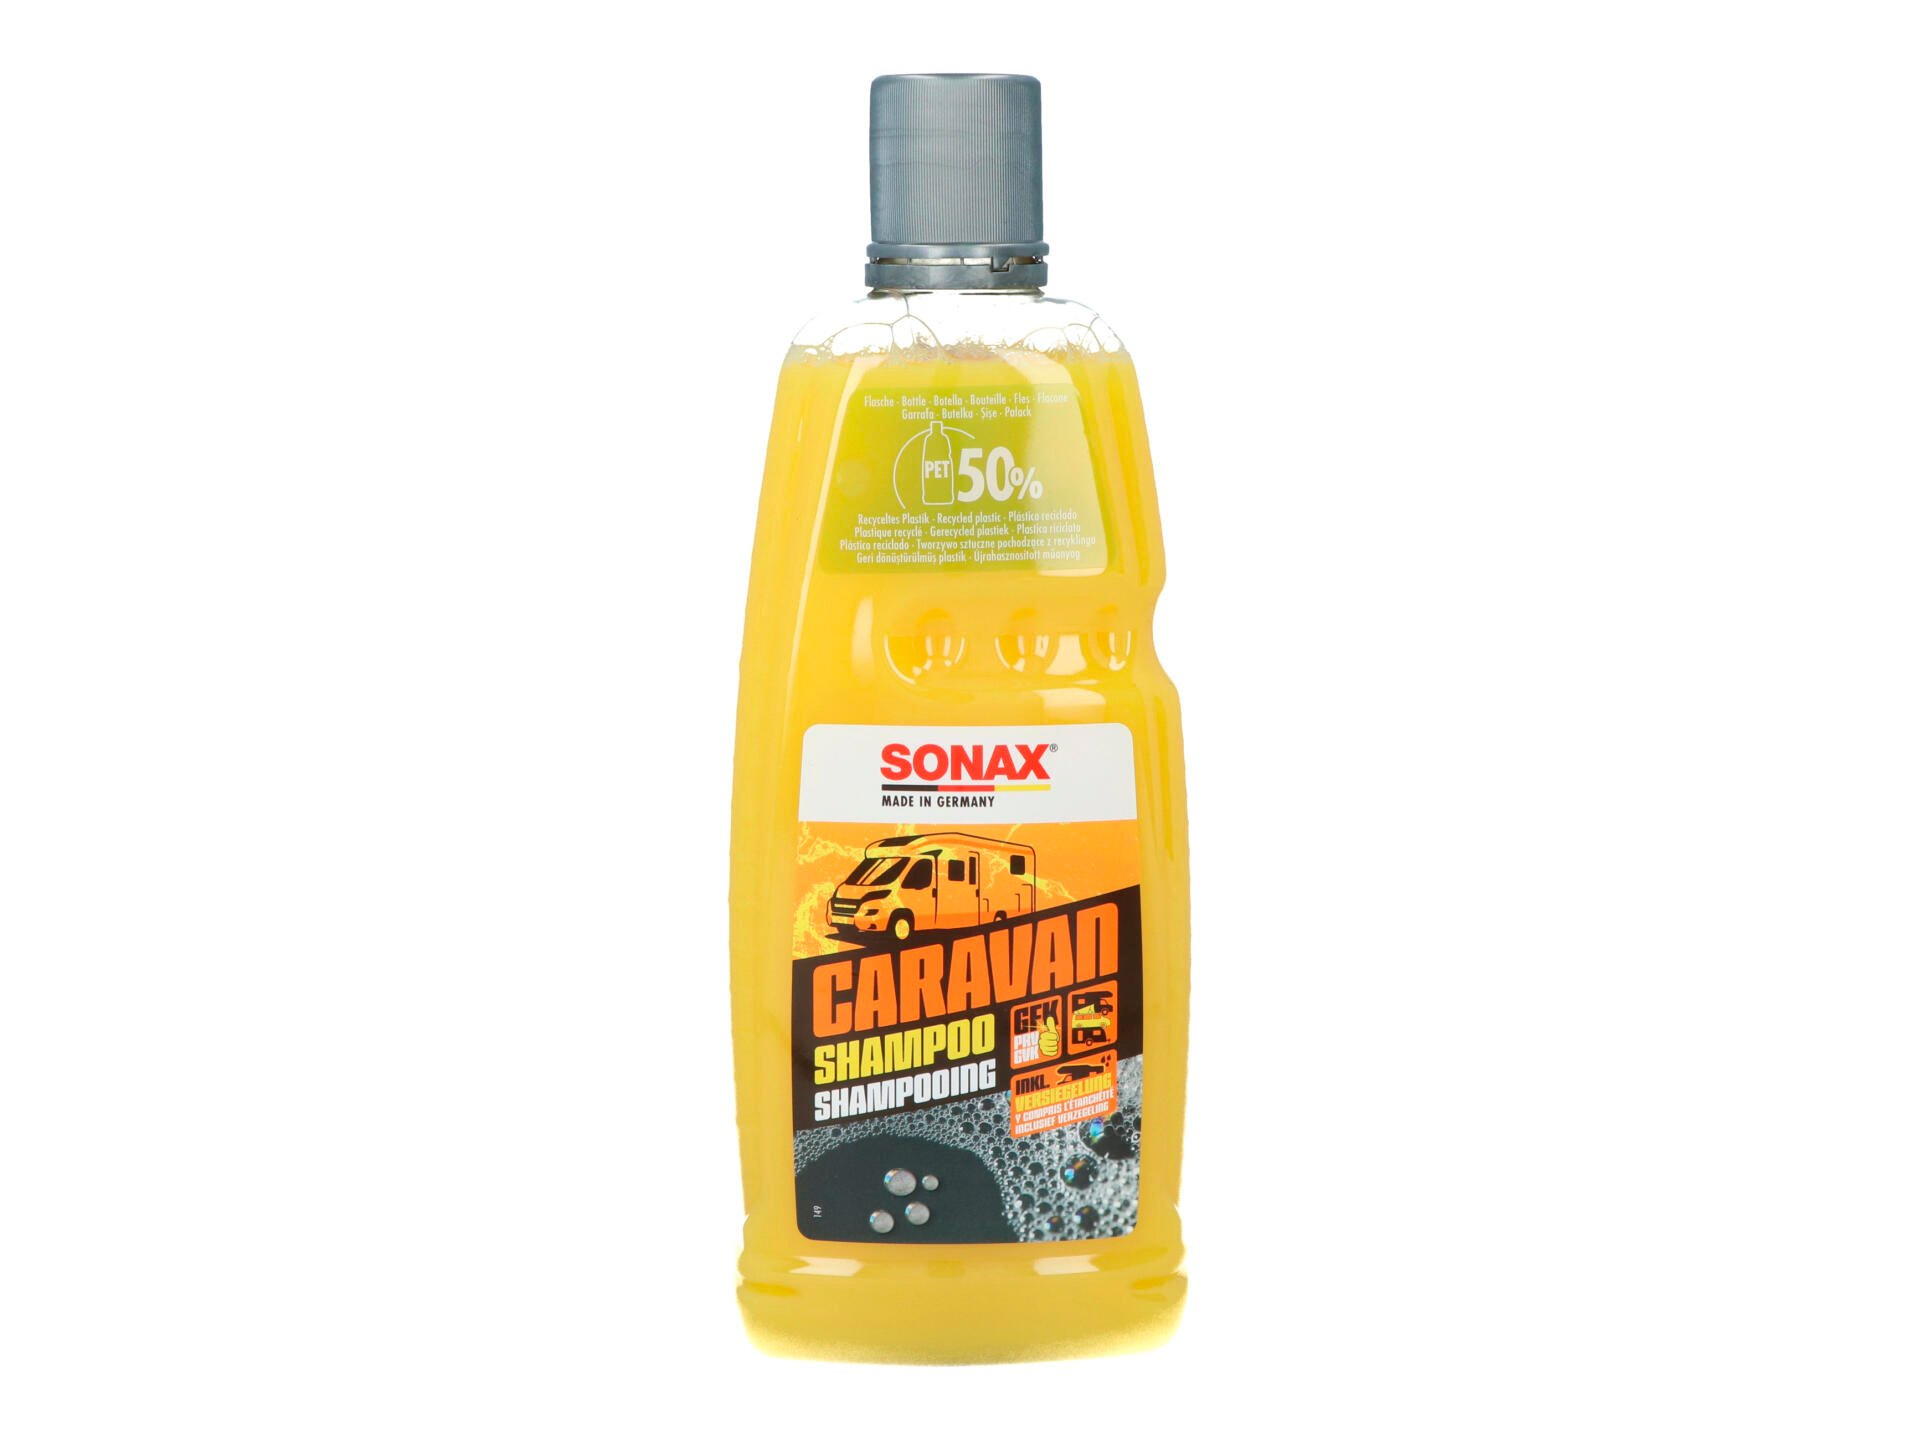 Sonax Caravan shampooing 1l